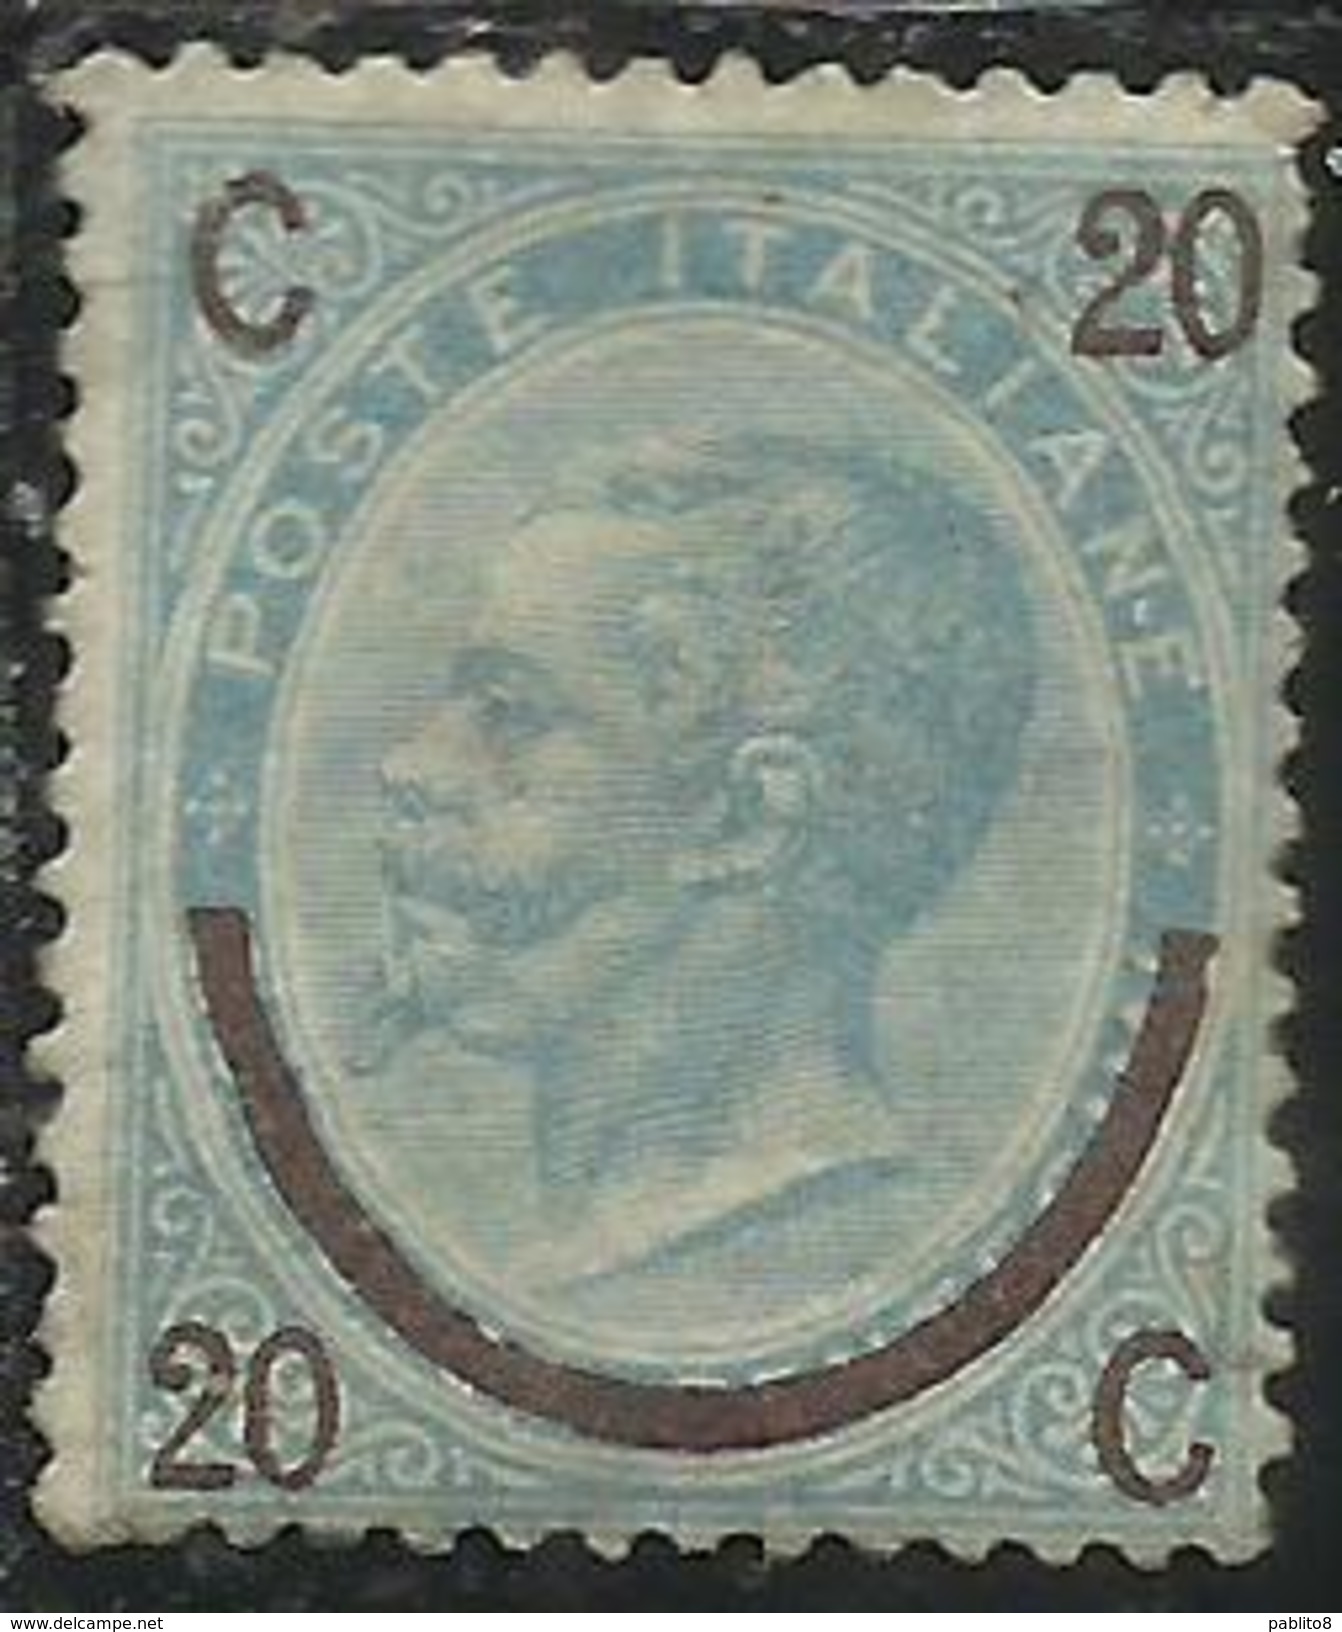 ITALIA REGNO ITALY KINGDOM 1865 VITTORIO EMANUELE II Cent. 20 Su 15 FERRO DI CAVALLO I TIPO MLH FIRMATO SIGNED - Mint/hinged